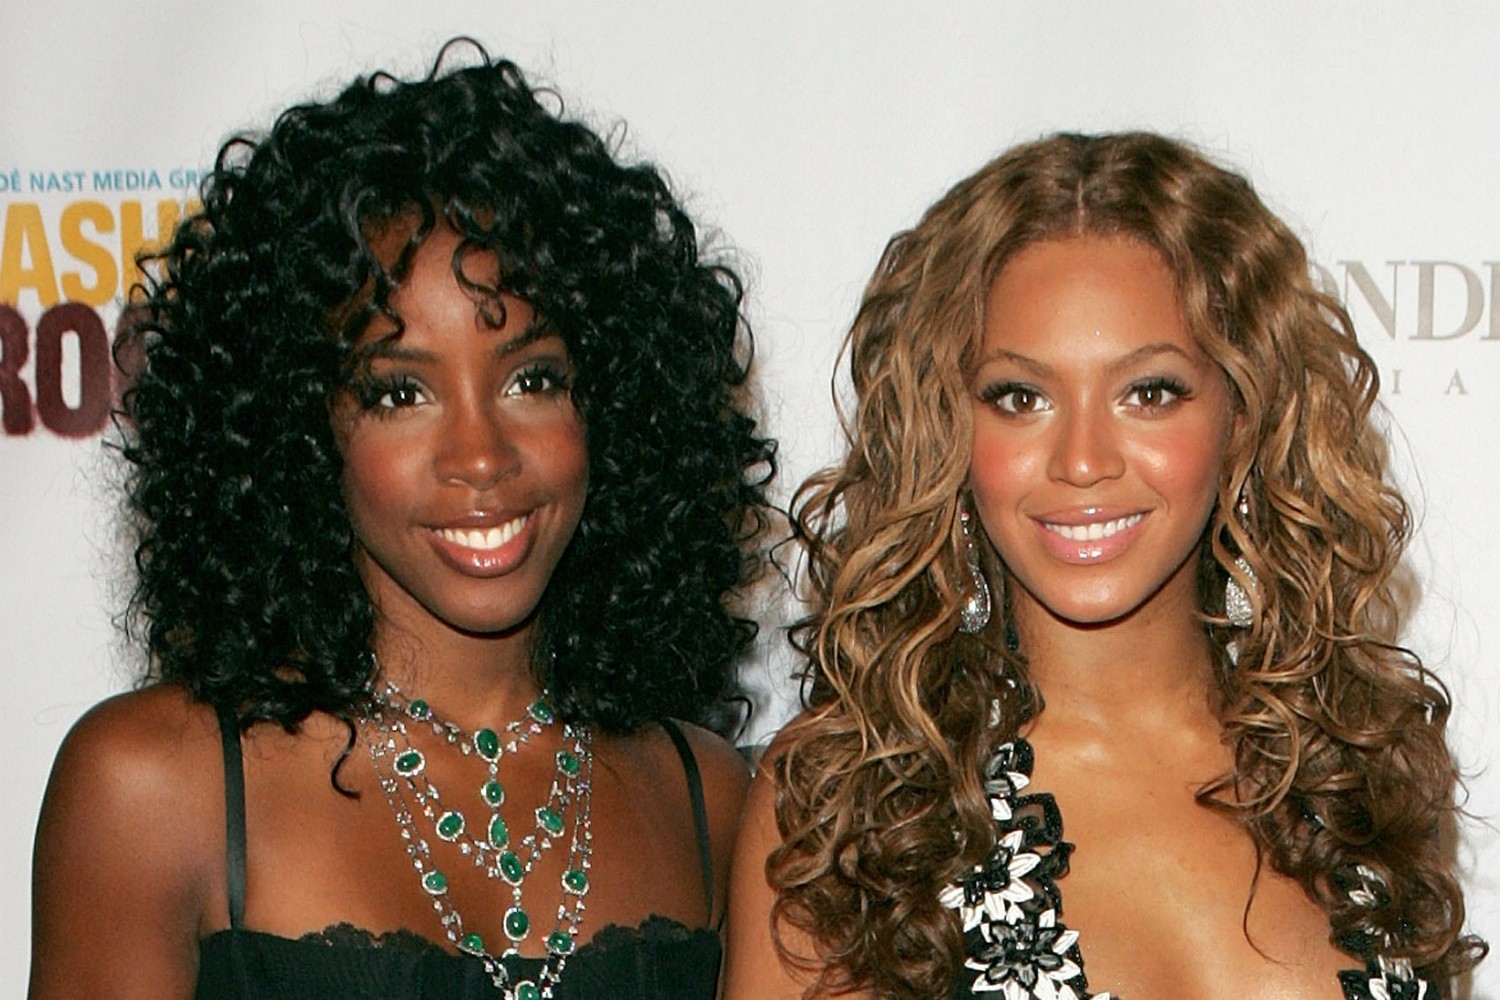 Antes juntas no grupo Destiny's Child (1990-2006), hoje Beyoncé e Kelly Rowland têm várias diferenças. Rowland fez até uma música, "Dirty Laundry", para expressar a raiva pela ex-amiga e colega. (Foto: Getty Images)